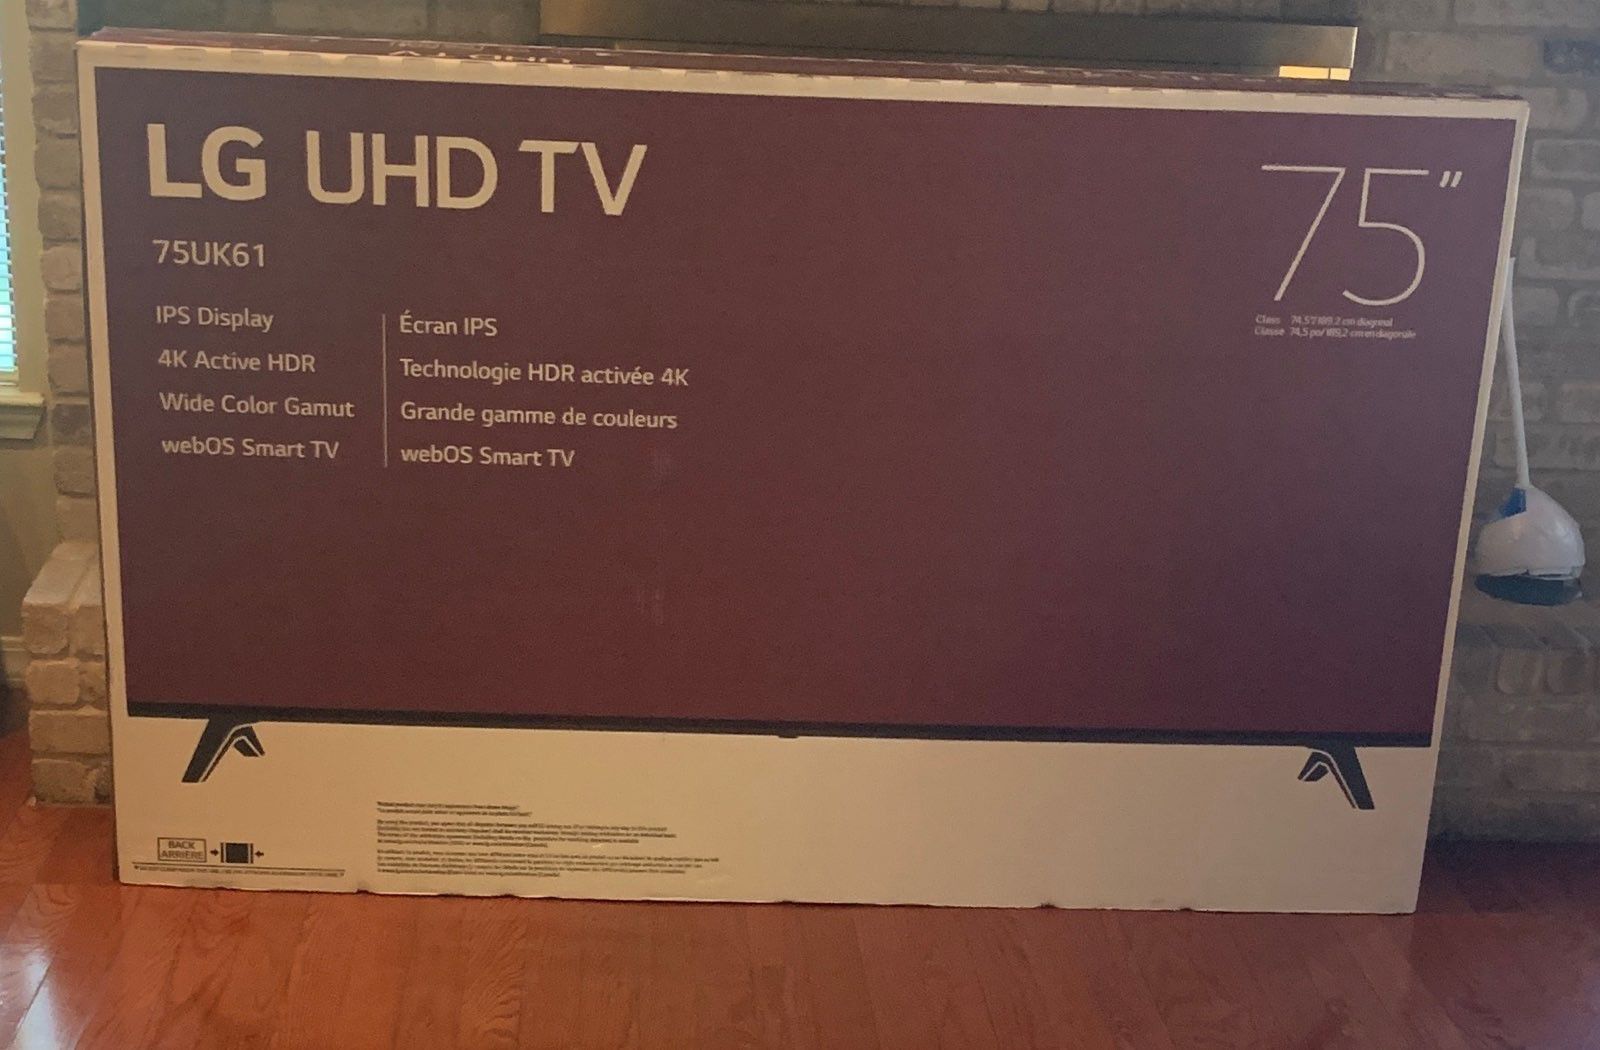 LG UHD TV 75"